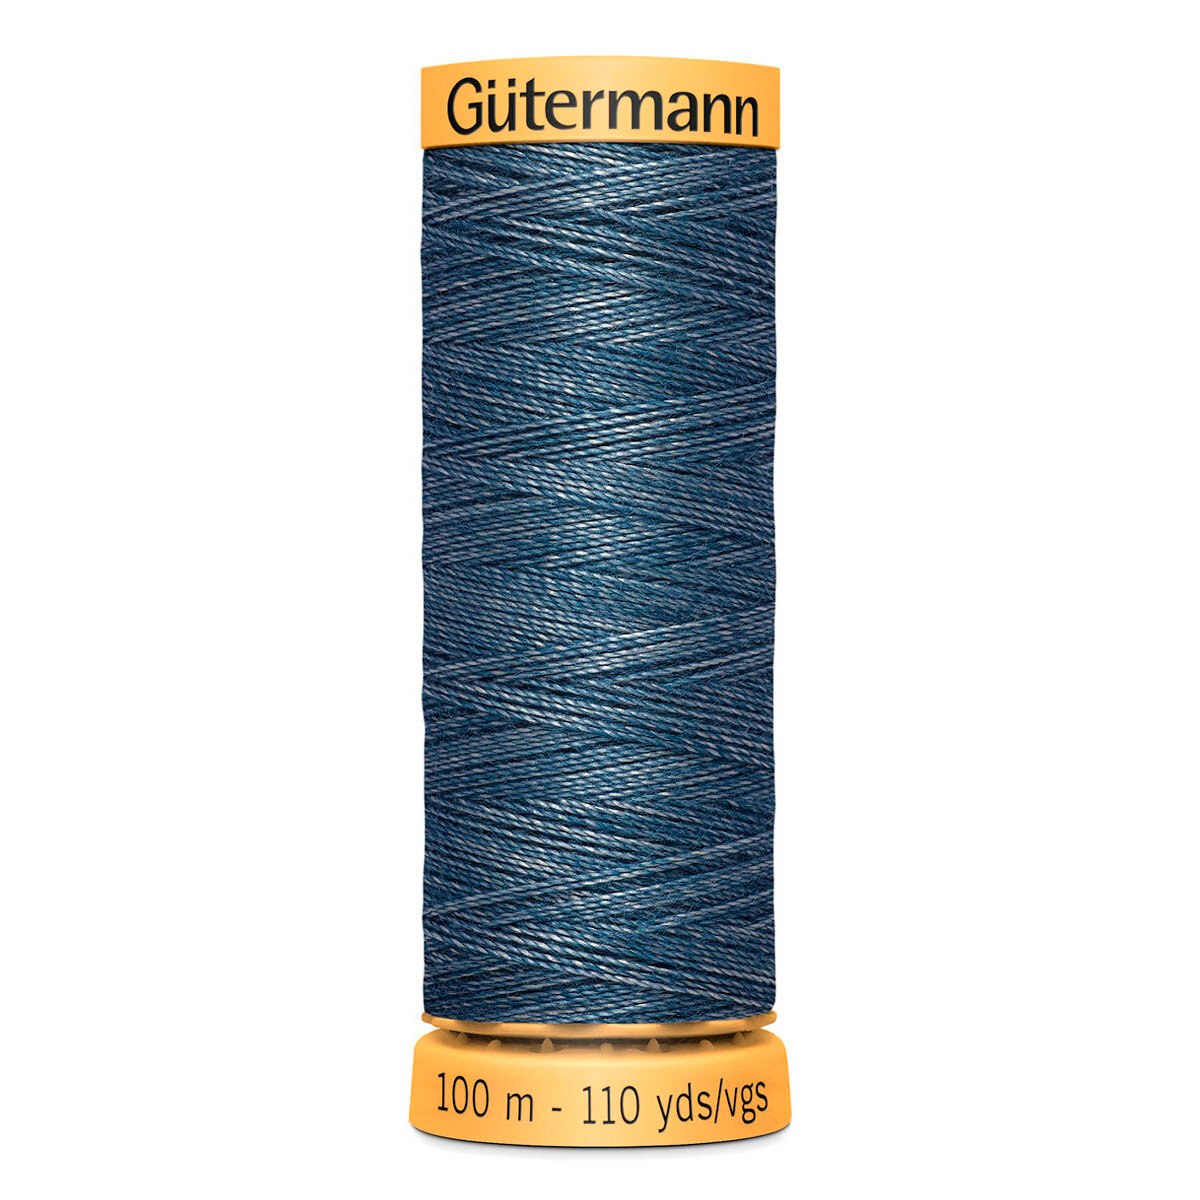 Нить Gutermann Jeans 75/100 м для штопки джинсовых материалов, 70% полиэстер, 30% хлопок, 5397